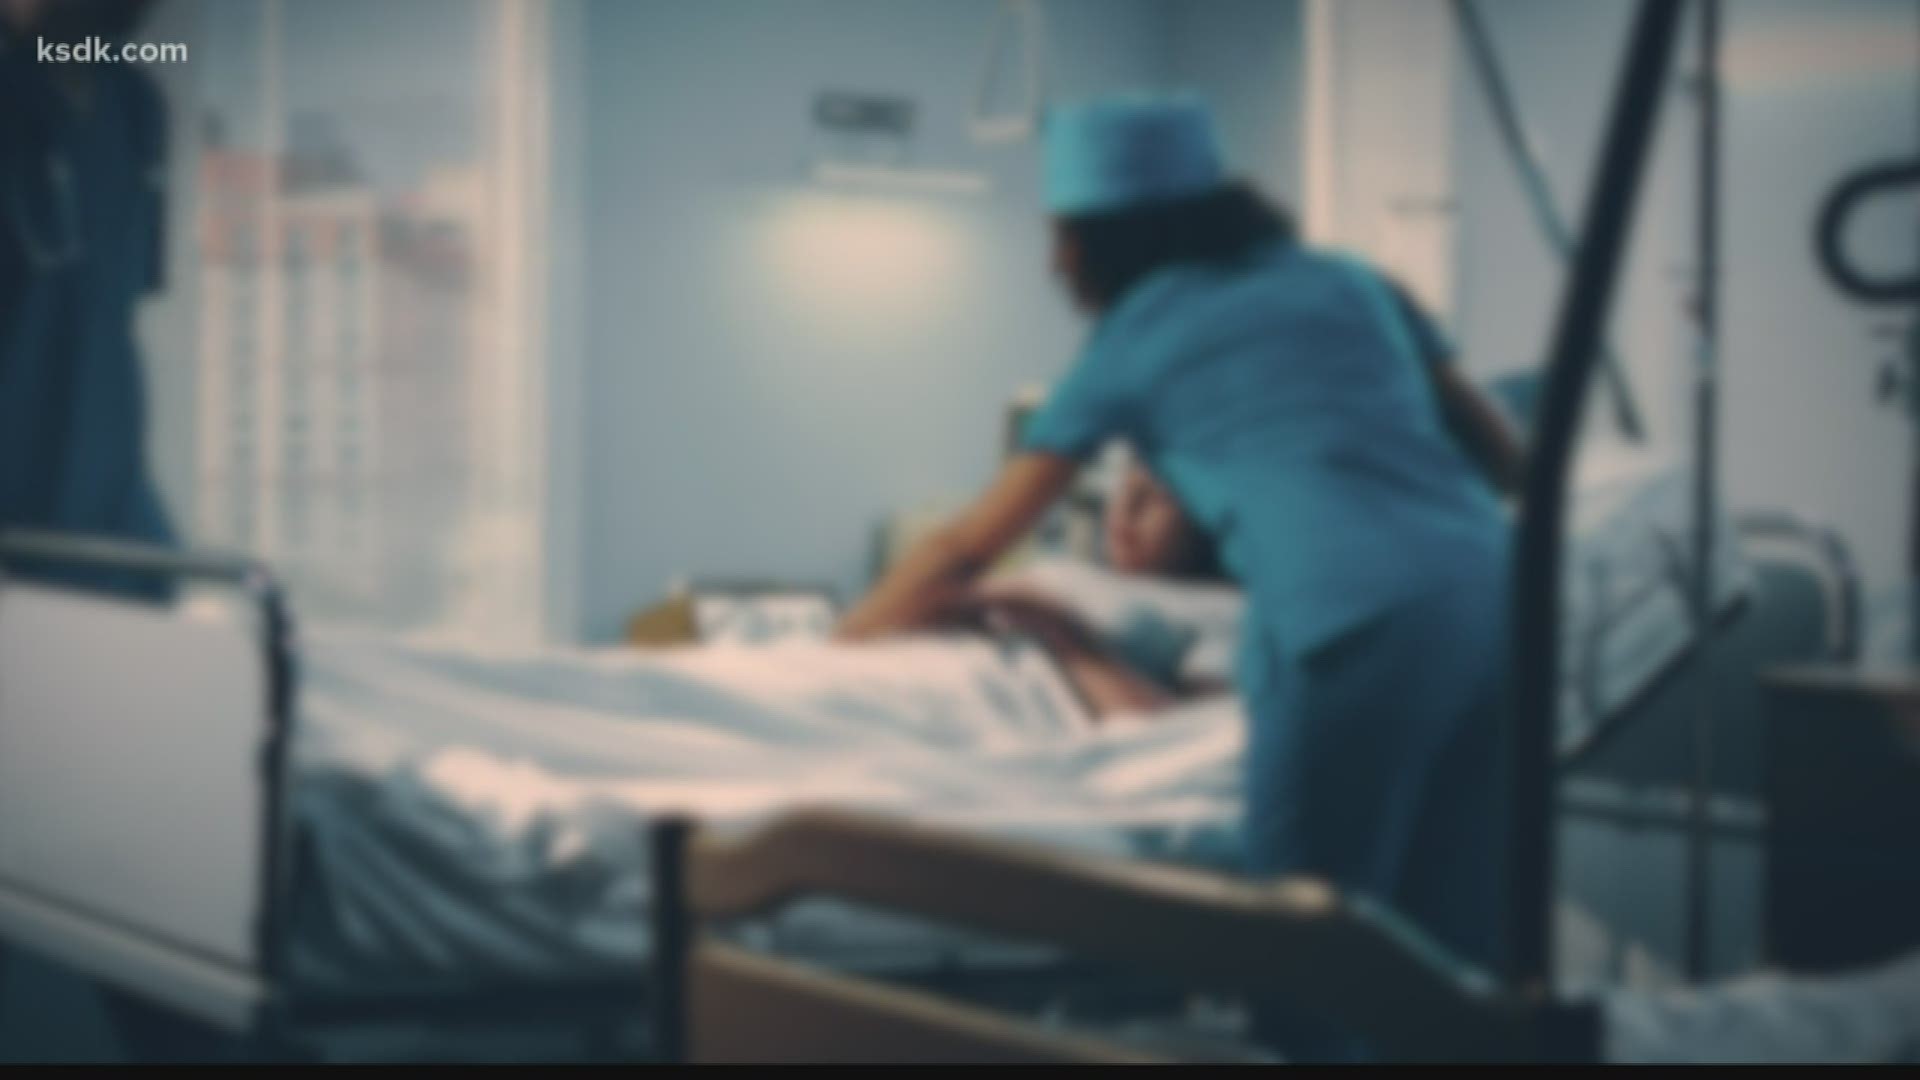 Shortage of SANE nurses in Missouri to handle rape kits, victims | ksdk.com